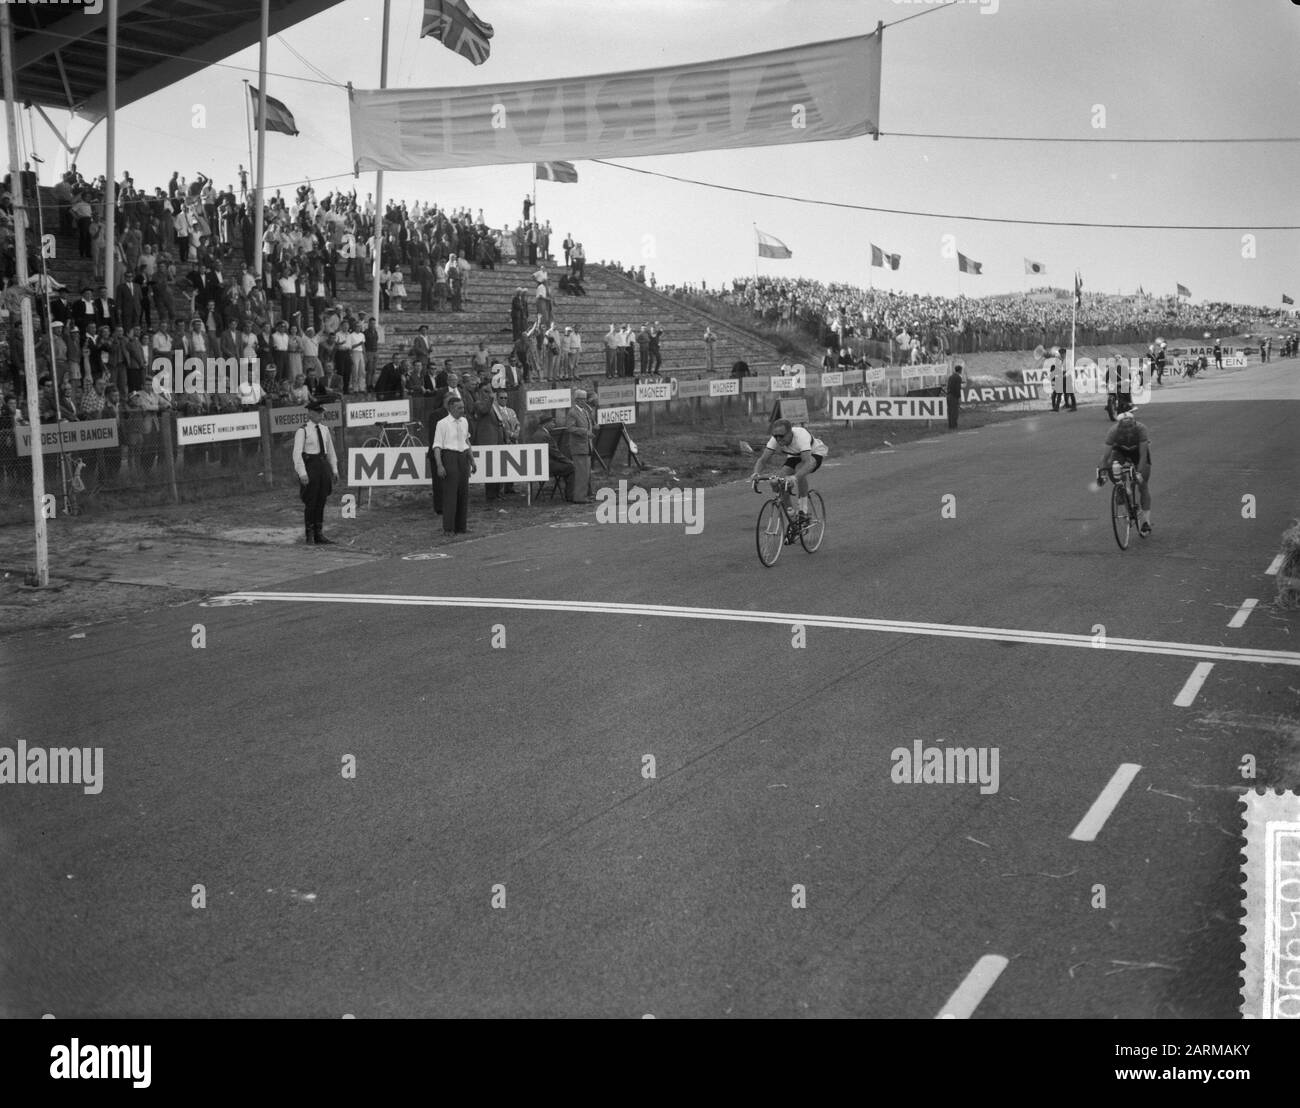 Campeonatos del mundo aficionados del ciclismo en la carretera en Zandvoort, acabado izquierda Schur y derecha Maliepaard Fecha: 15 de agosto de 1959 Foto de stock